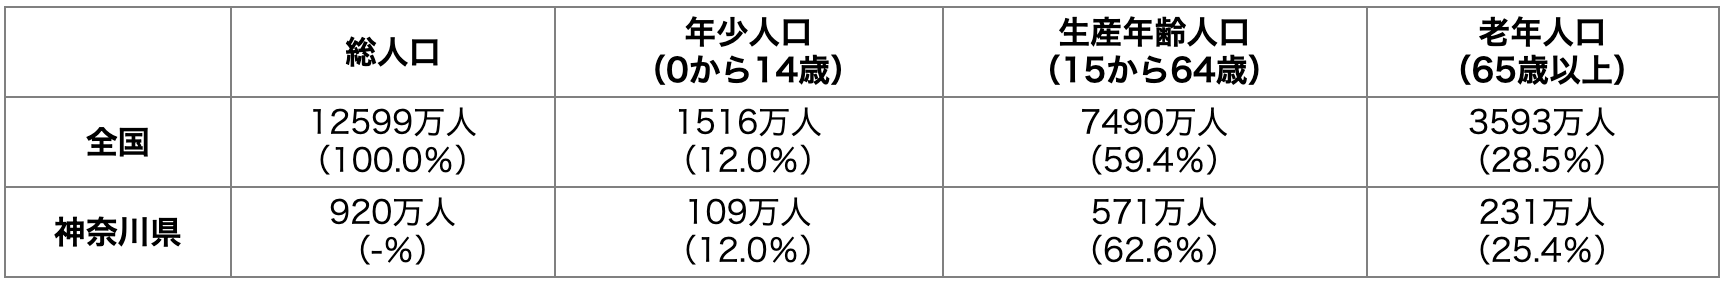 神奈川県の年齢別人口